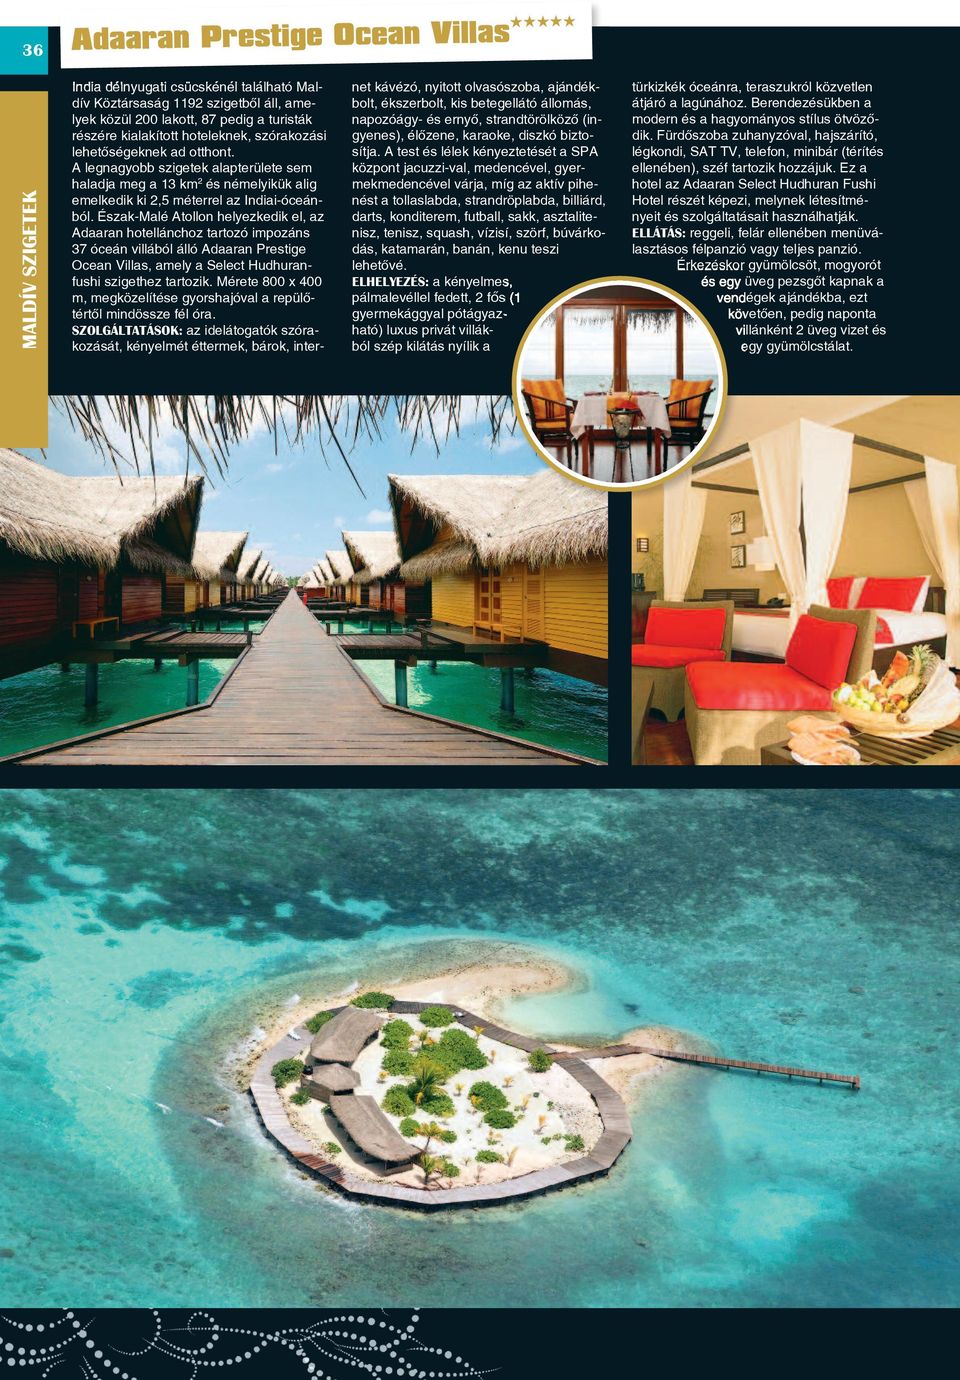 Észak-Malé Atollon helyezkedik el, az Adaaran hotellánchoz tartozó impozáns 37 óceán villából álló Adaaran Prestige Ocean Villas, amely a Select Hudhuranfushi szigethez tartozik.